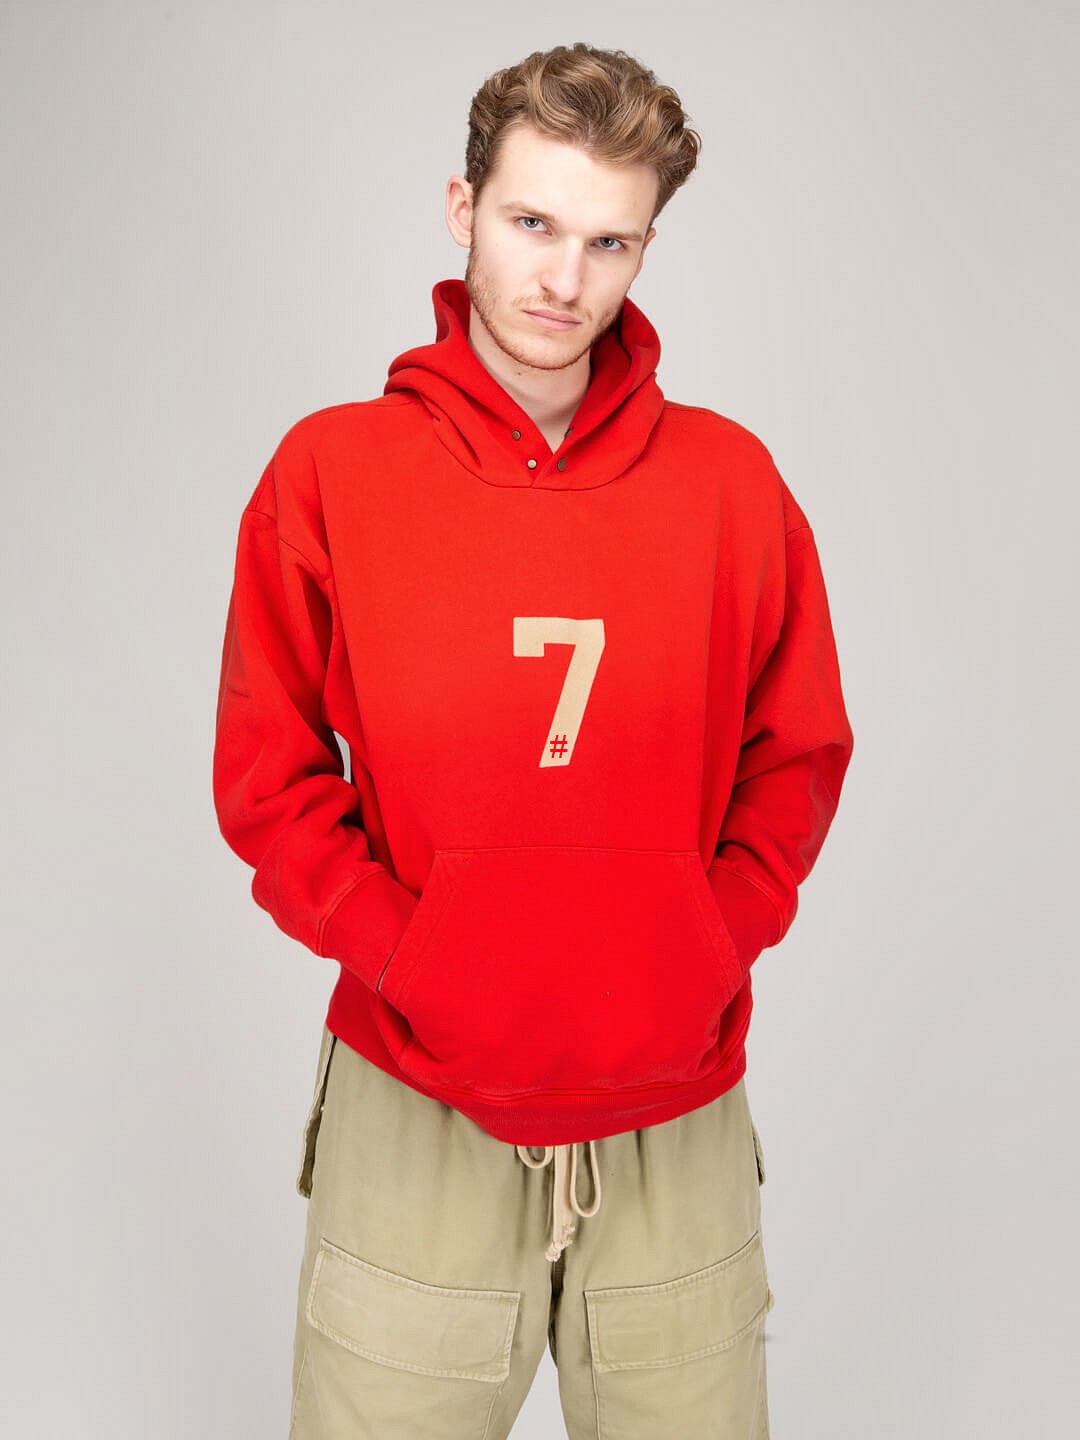 #7 Mens hoodie red